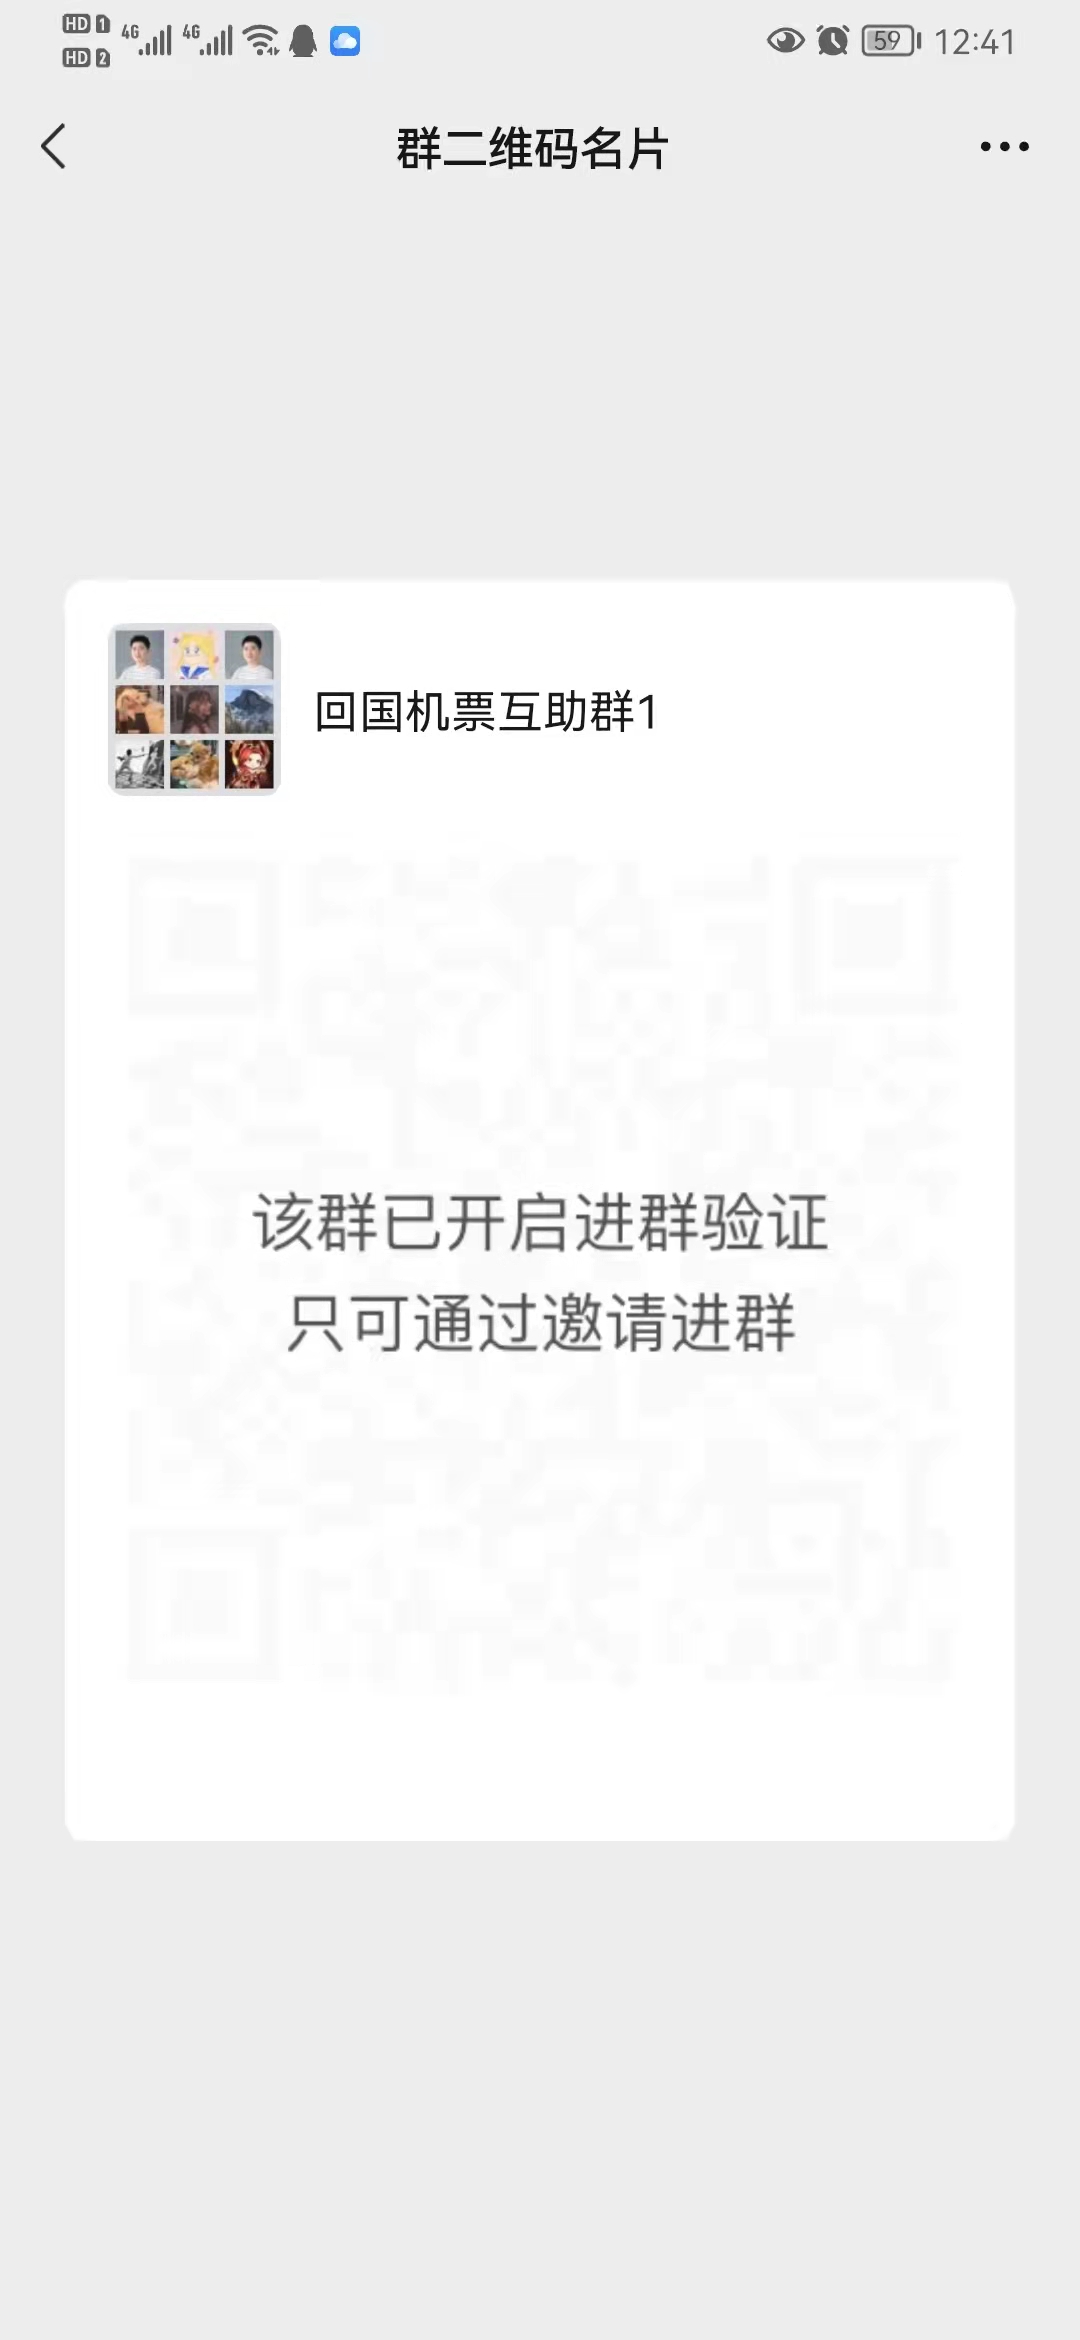 海外华人群留学生互助群 机票拼团 群微信二维码